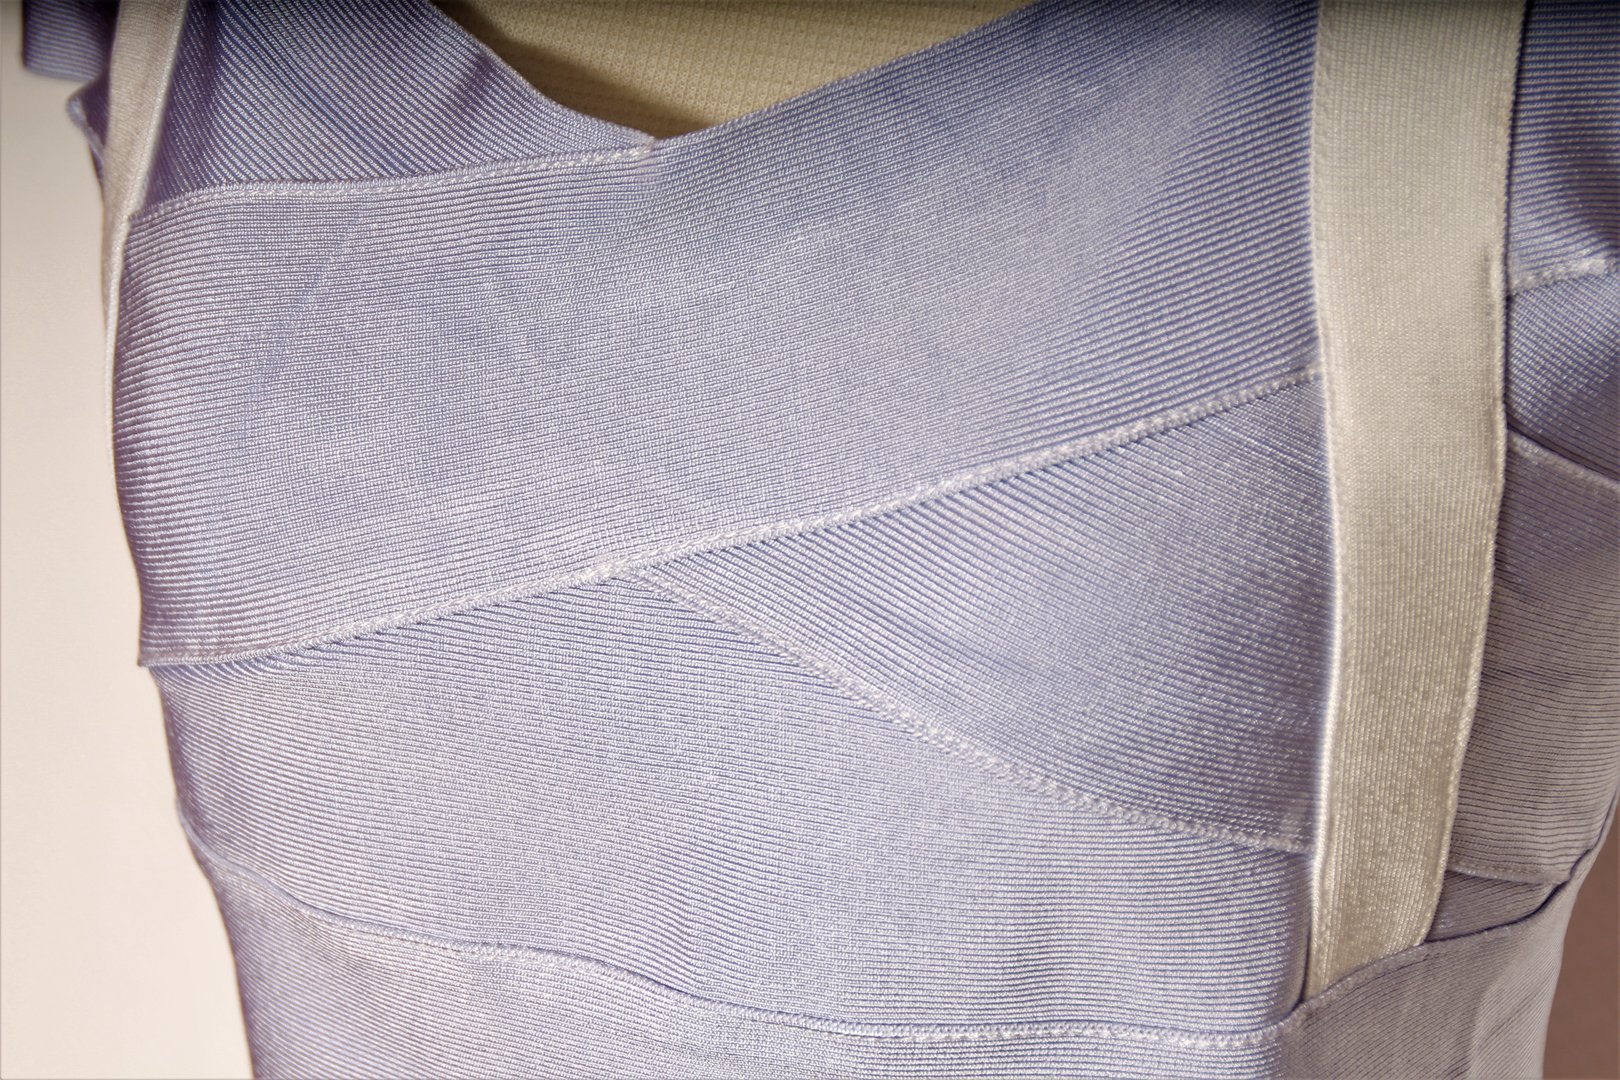 2 Teiler in weiss-hellblau figurbetontes Stretchkleid